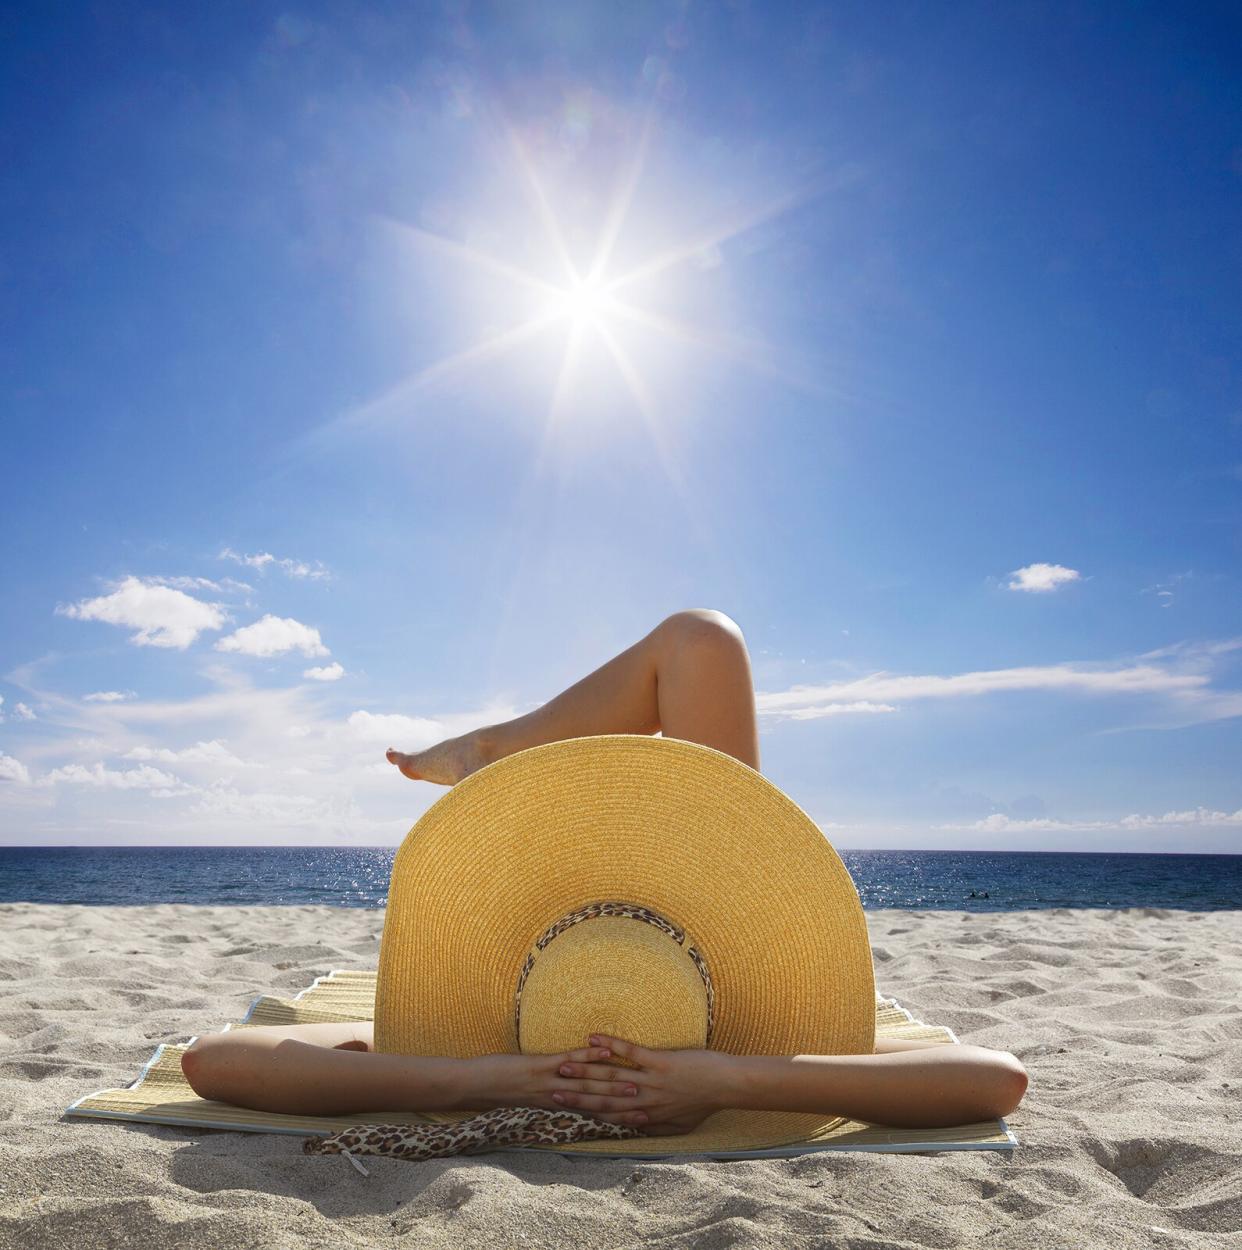 Woman in straw hat sunbathing on beach